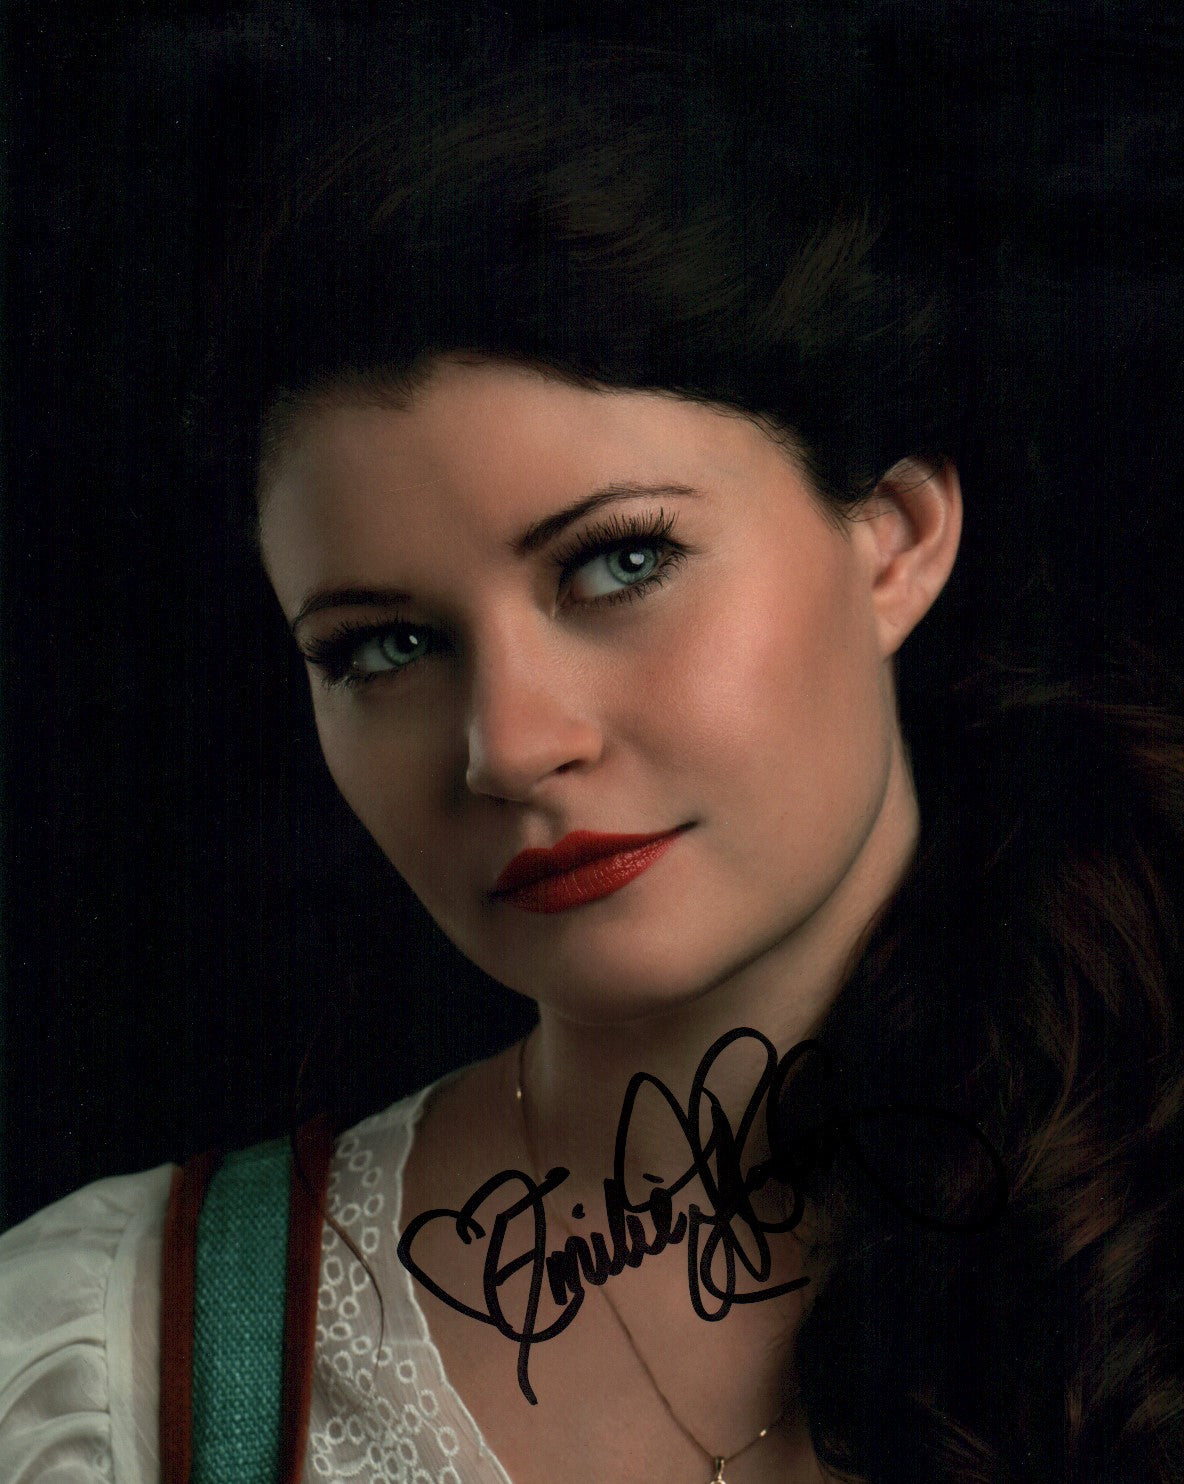 Emilie de Ravin Once Upon A Time 8x10 Photo Signed Autograph JSA Certified Autograph